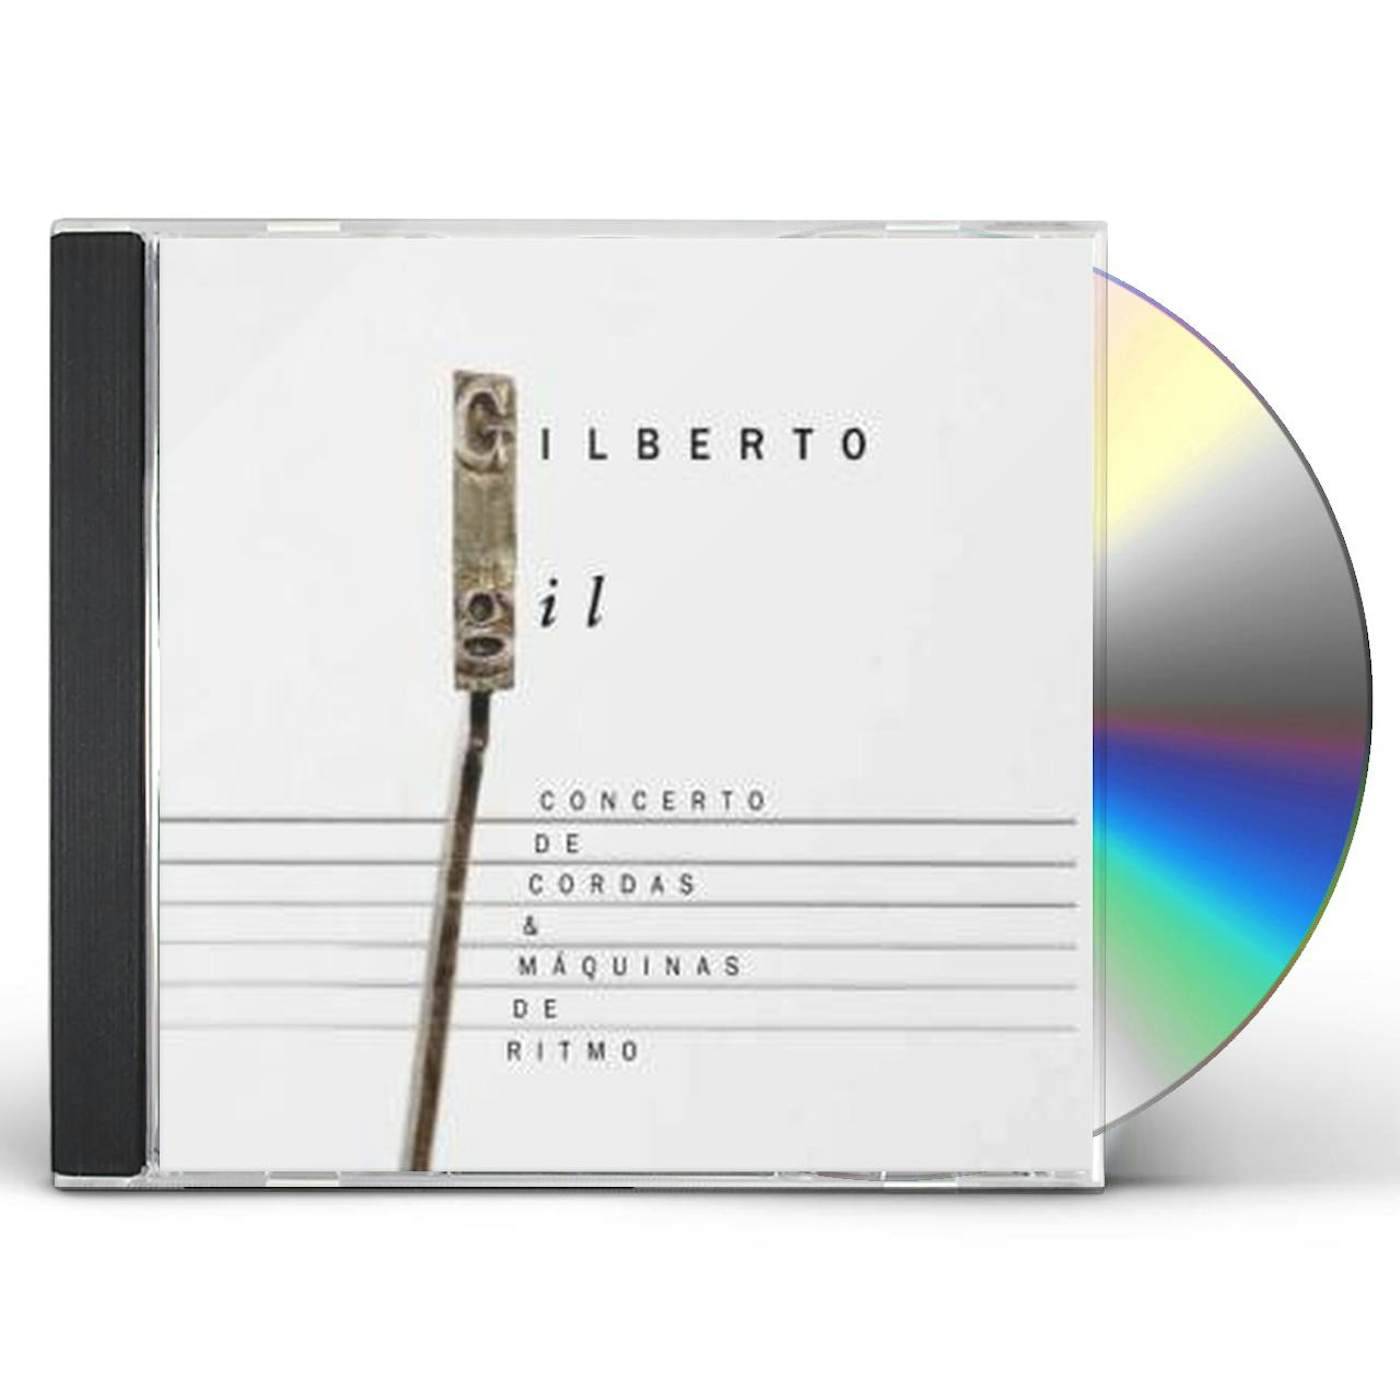 Gilberto Gil CONCERTO DE CORDAS E MAQUINAS DE RITMO CD